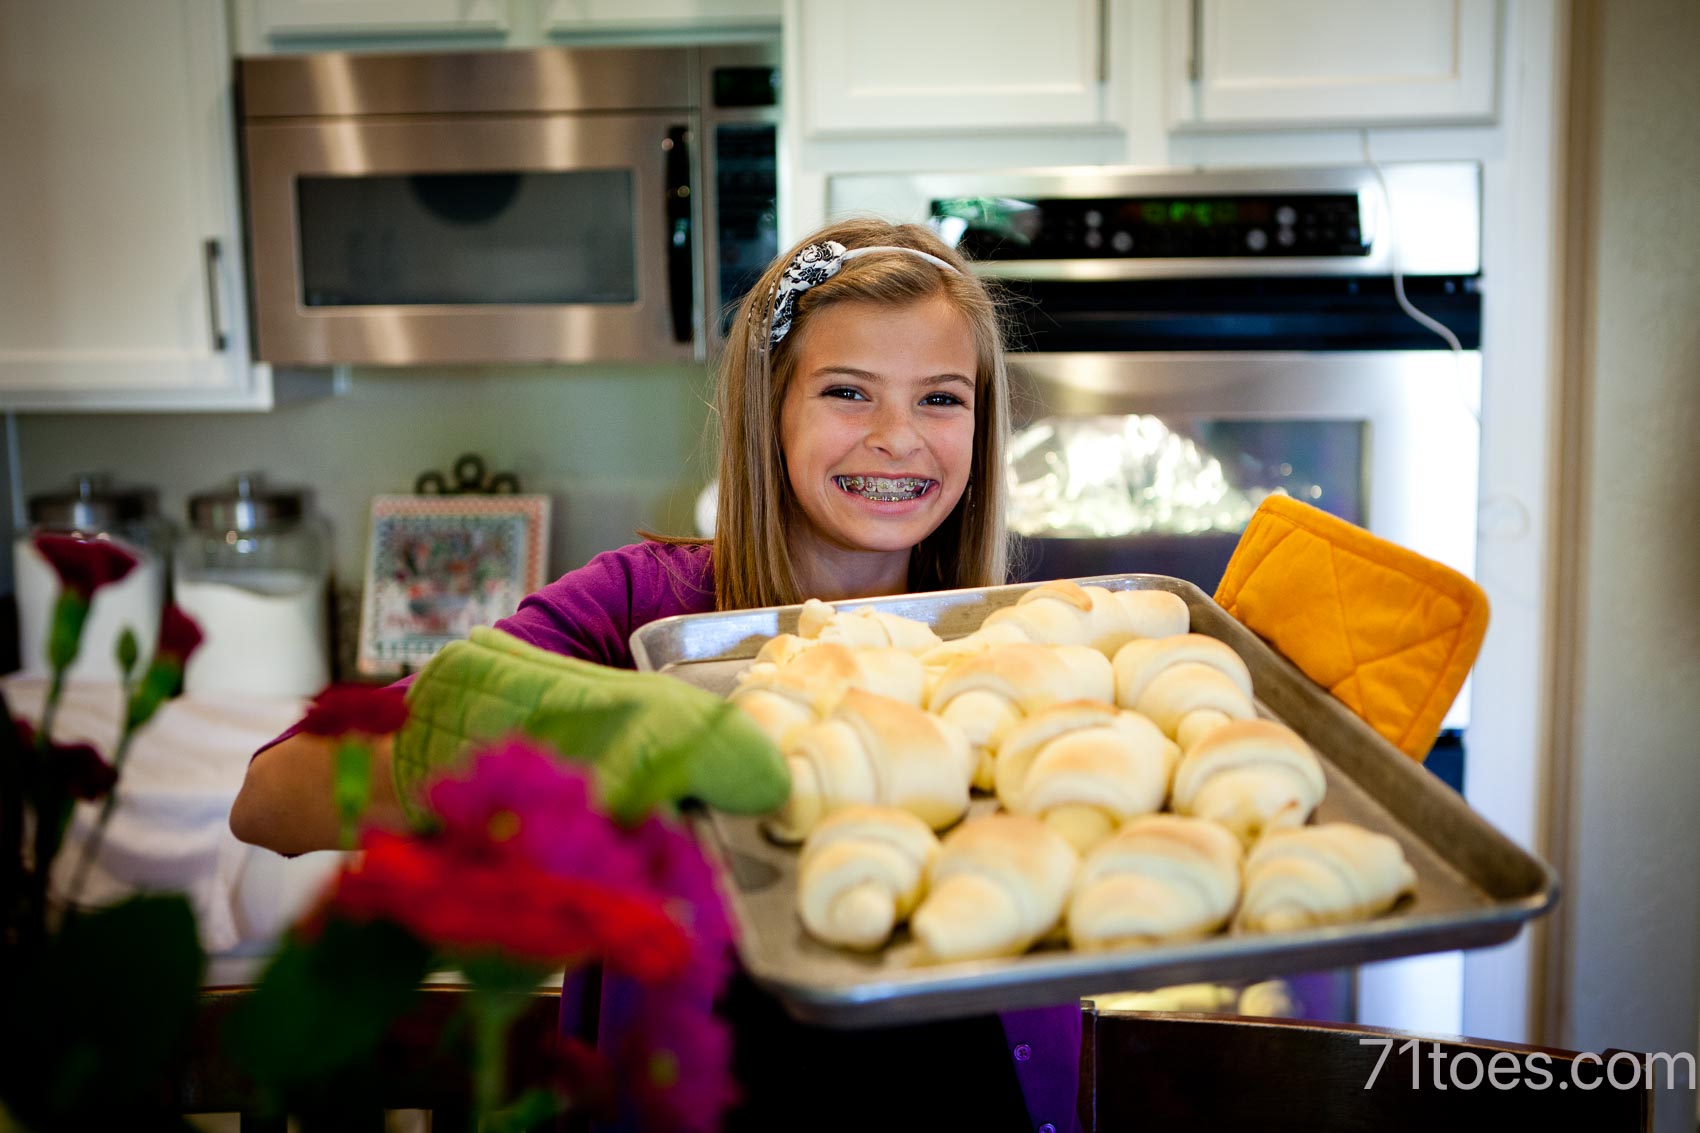 Elle holding freshly baked rolls